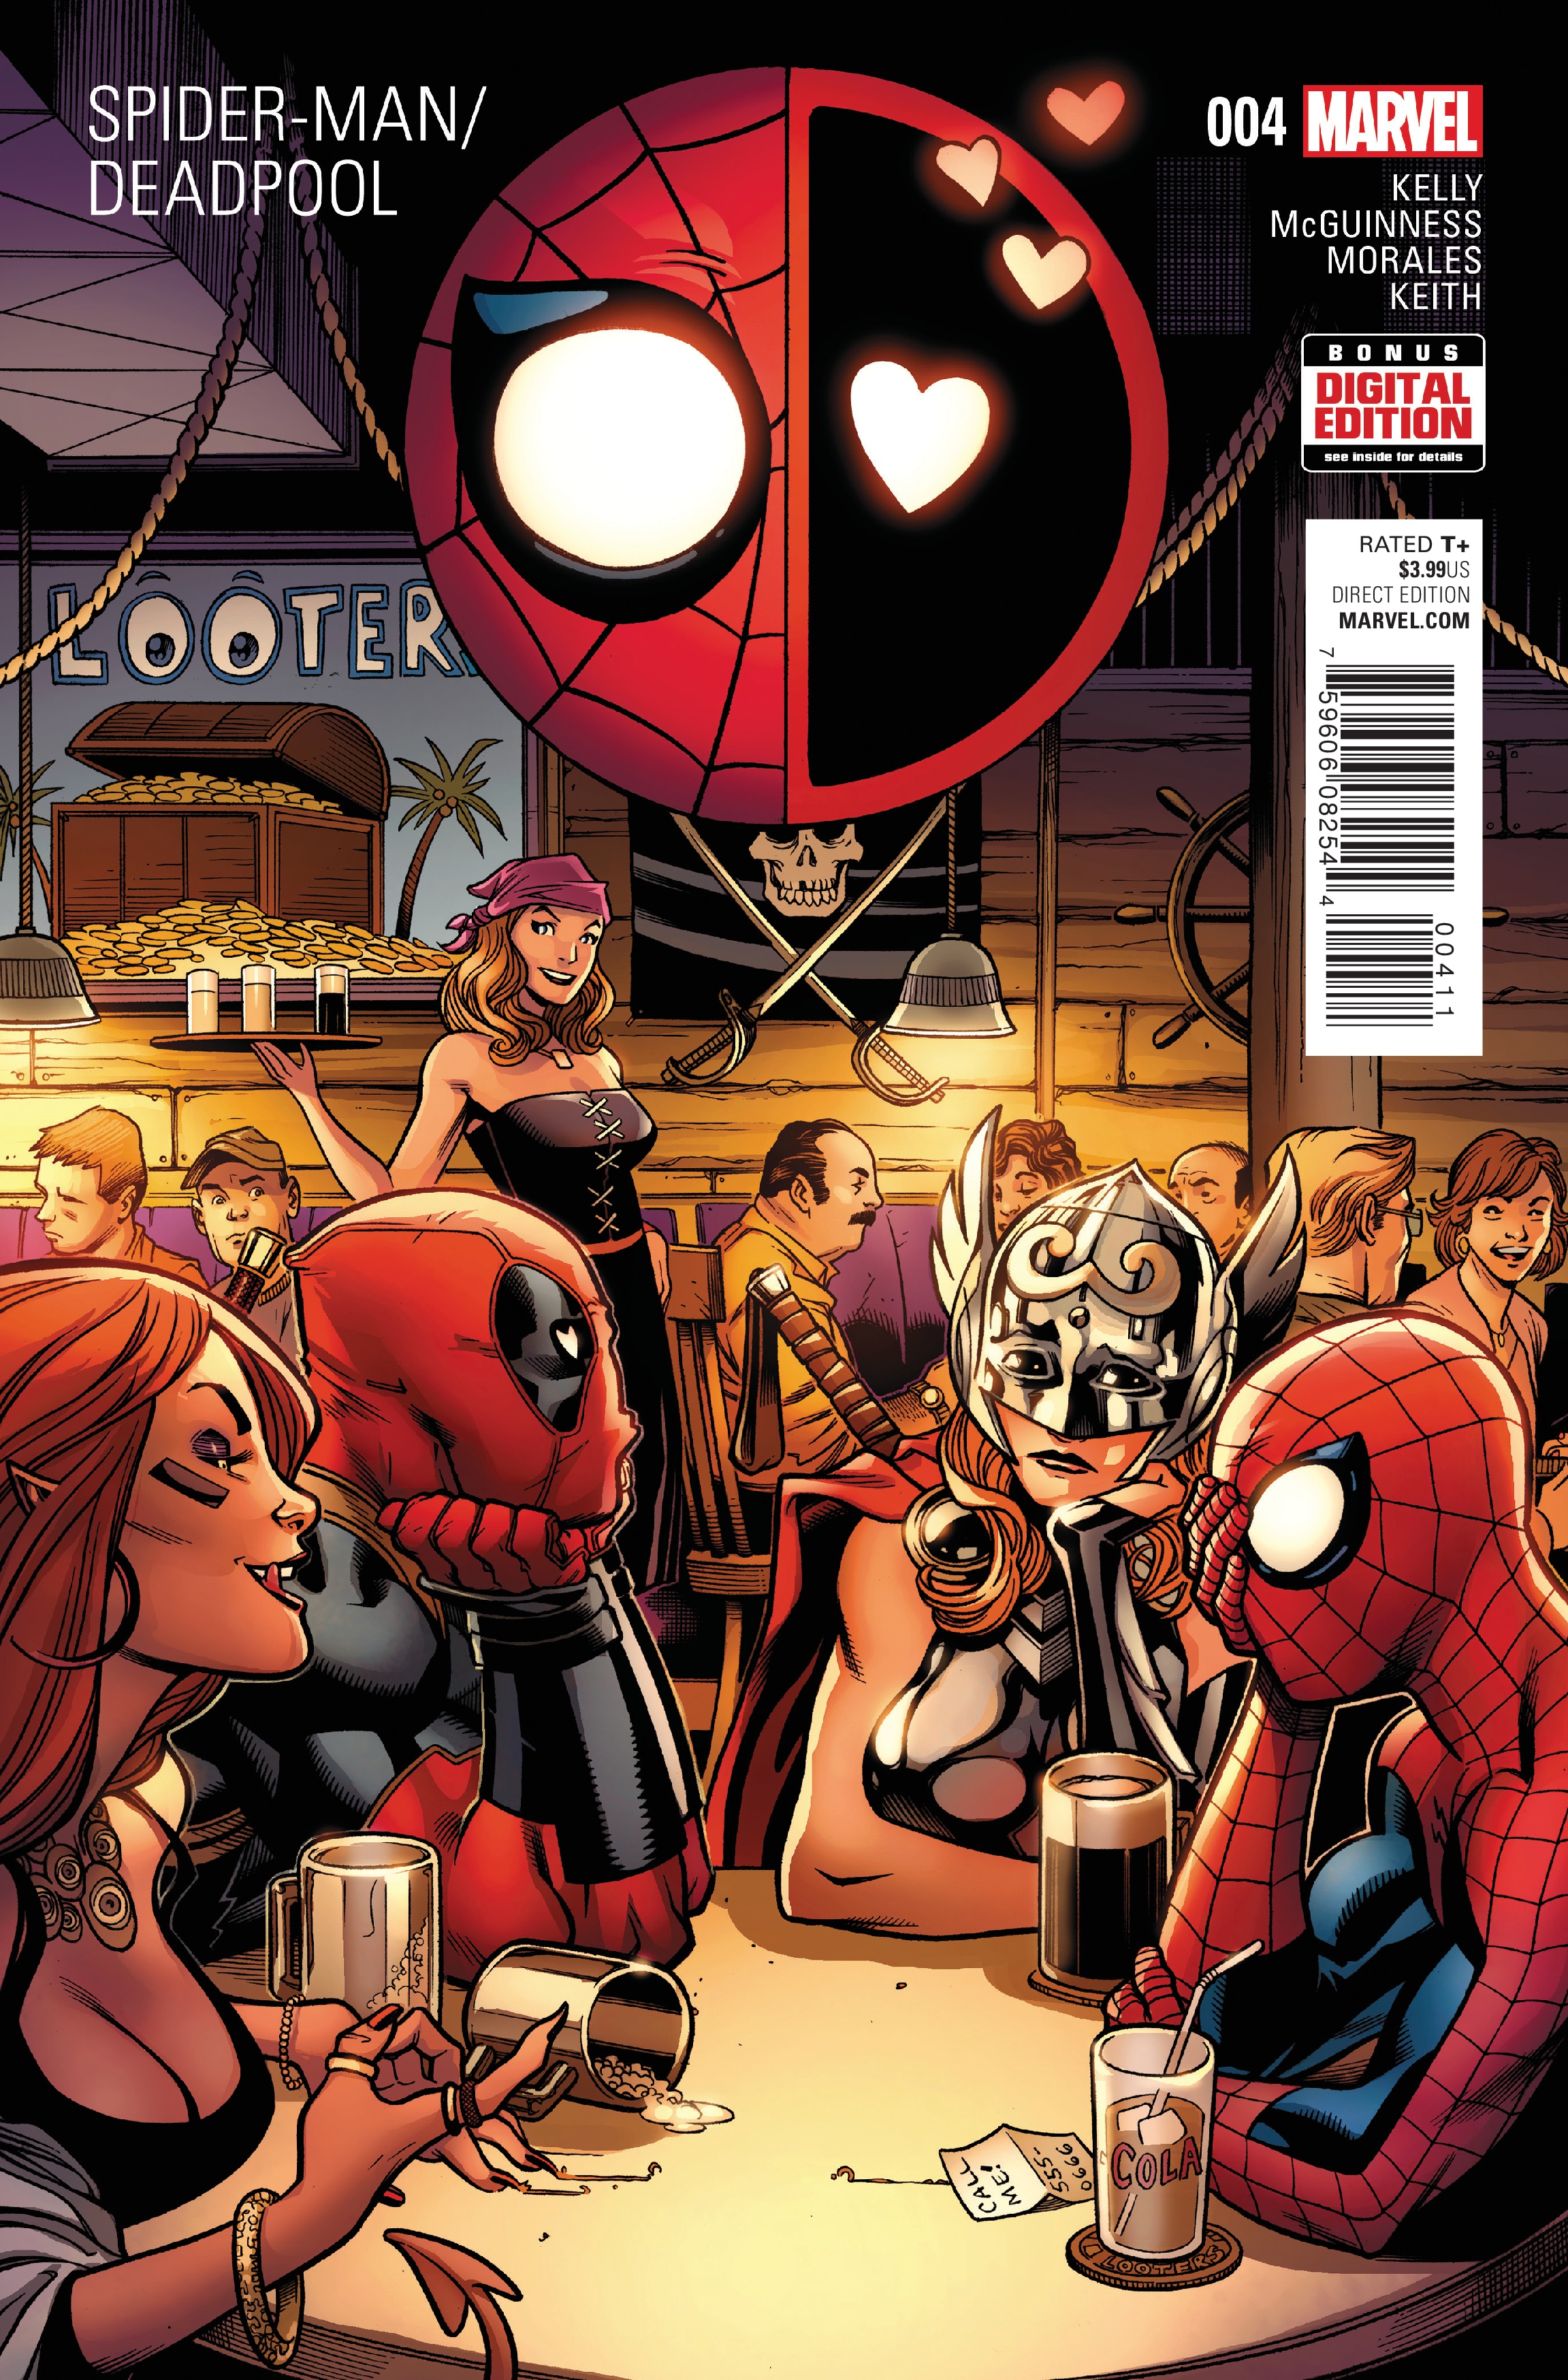 Spider-Man/Deadpool Vol 1 4 | Marvel Database | Fandom